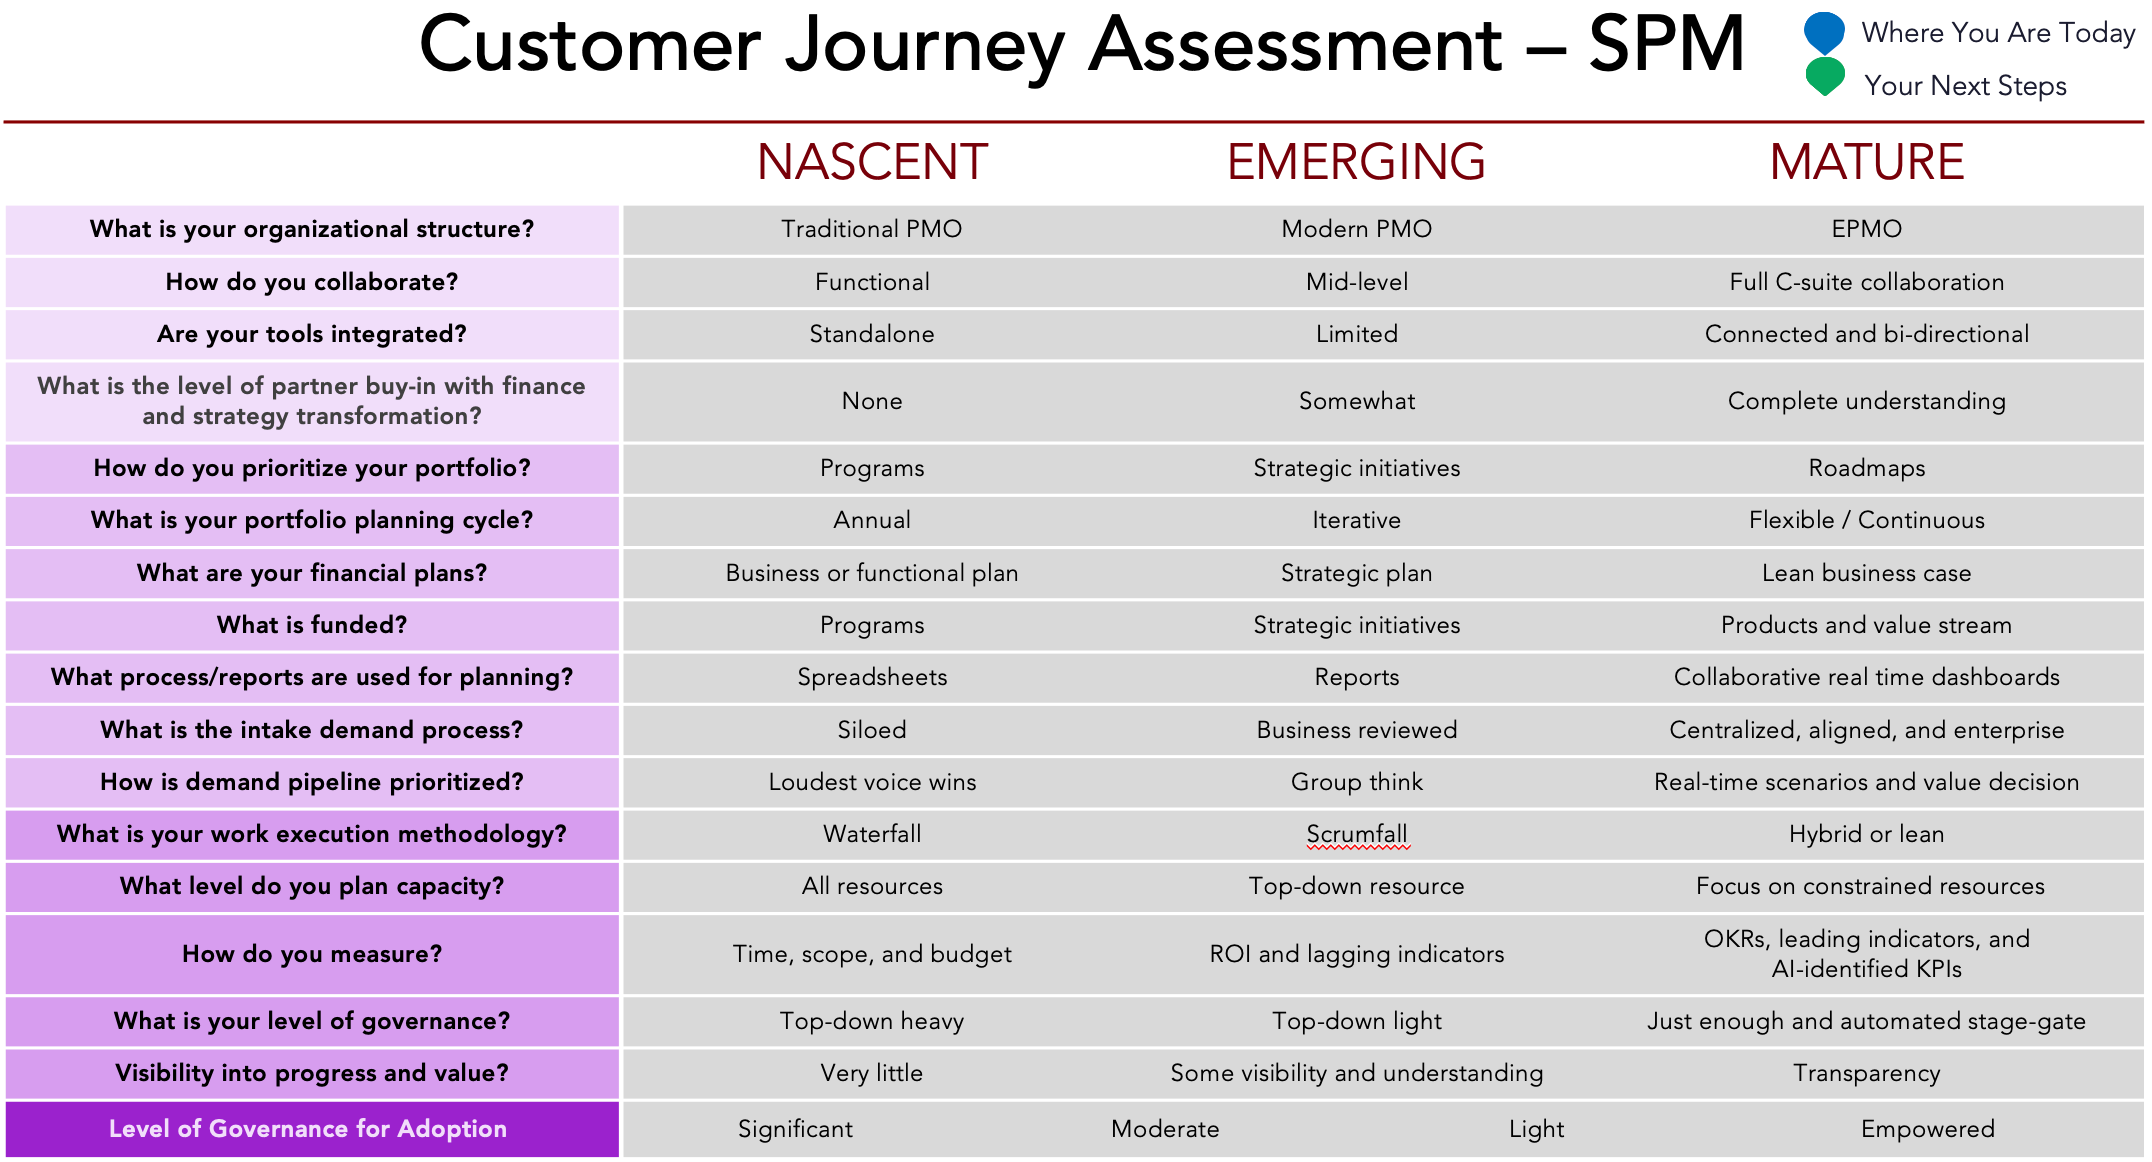 SPM Customer Journey Assessment.png